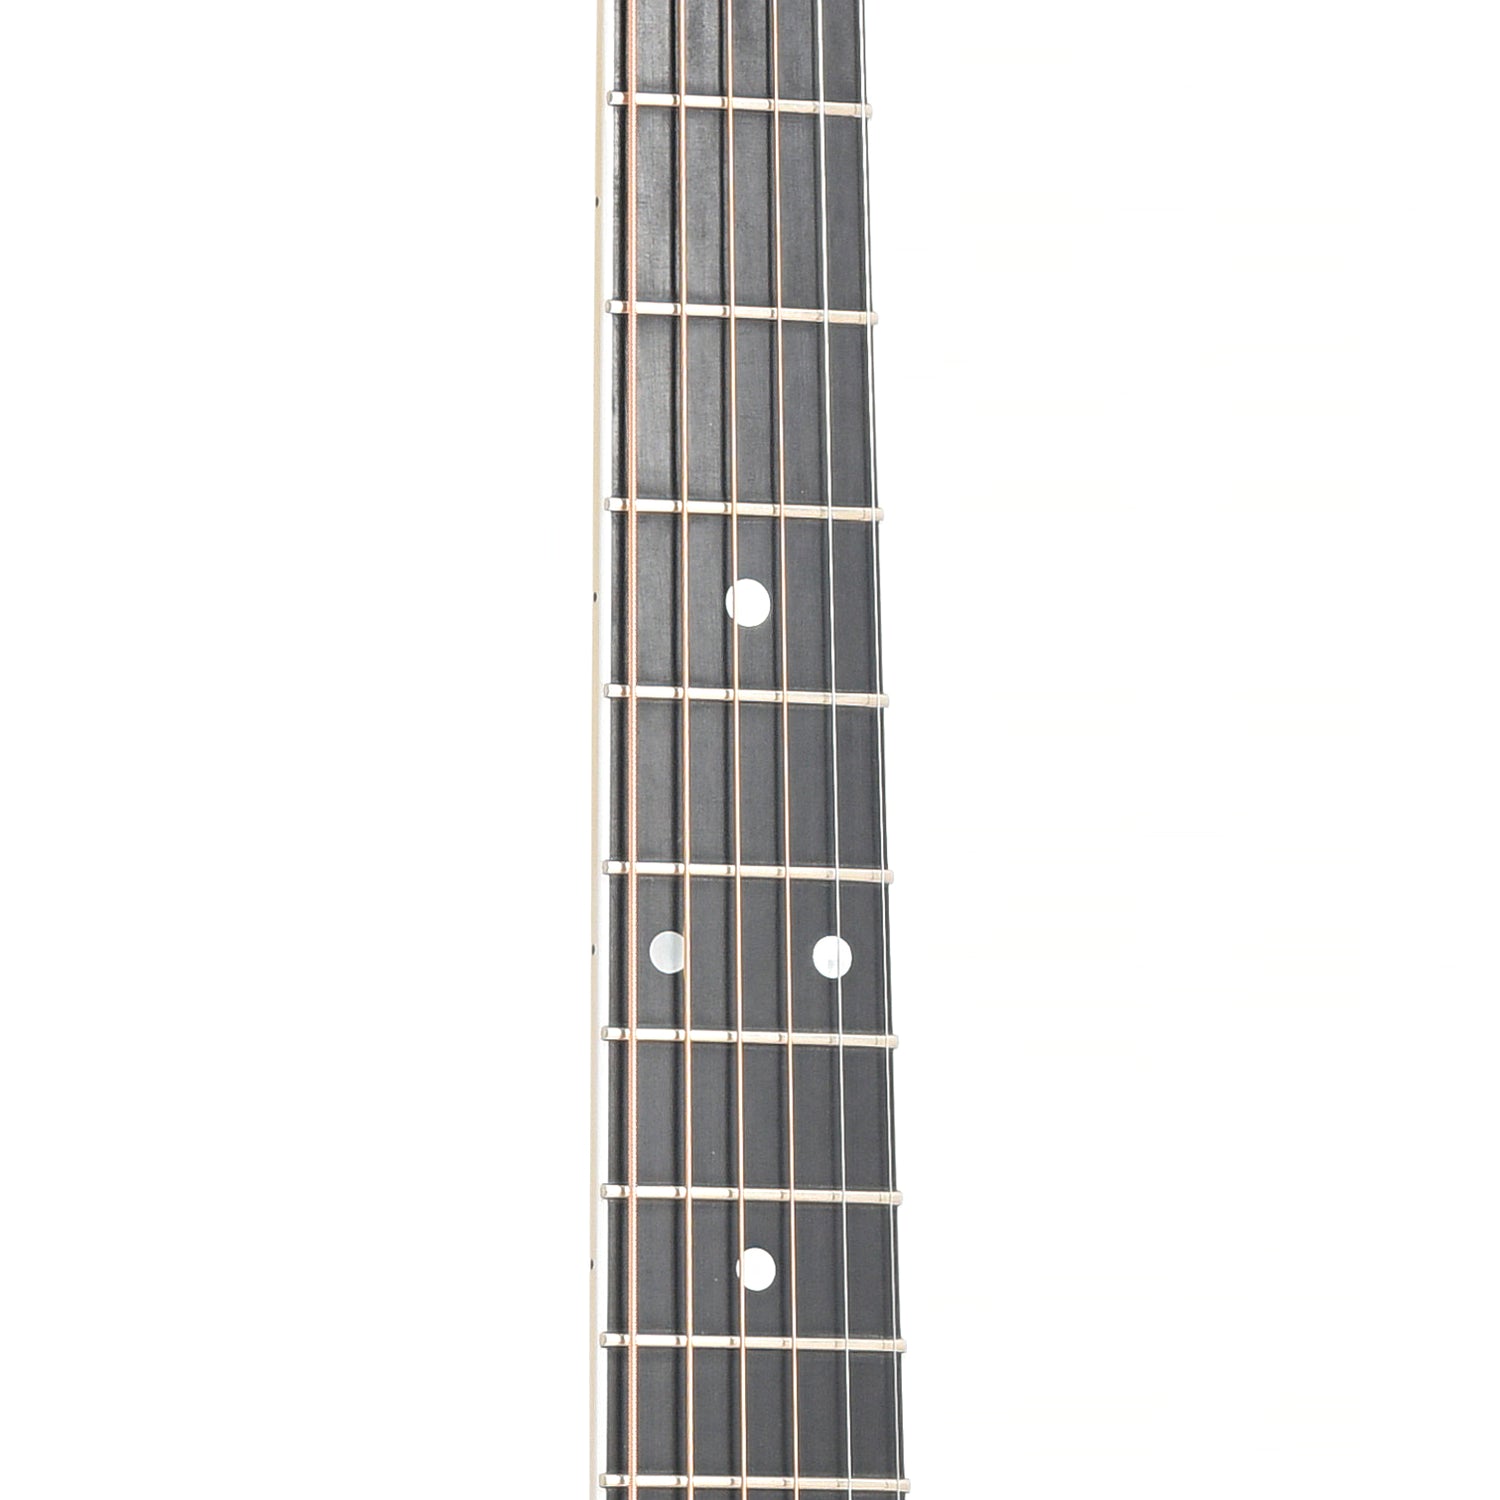 Martin 000C-16RGTE Premium Acoustic-Electric Guitar (2004)